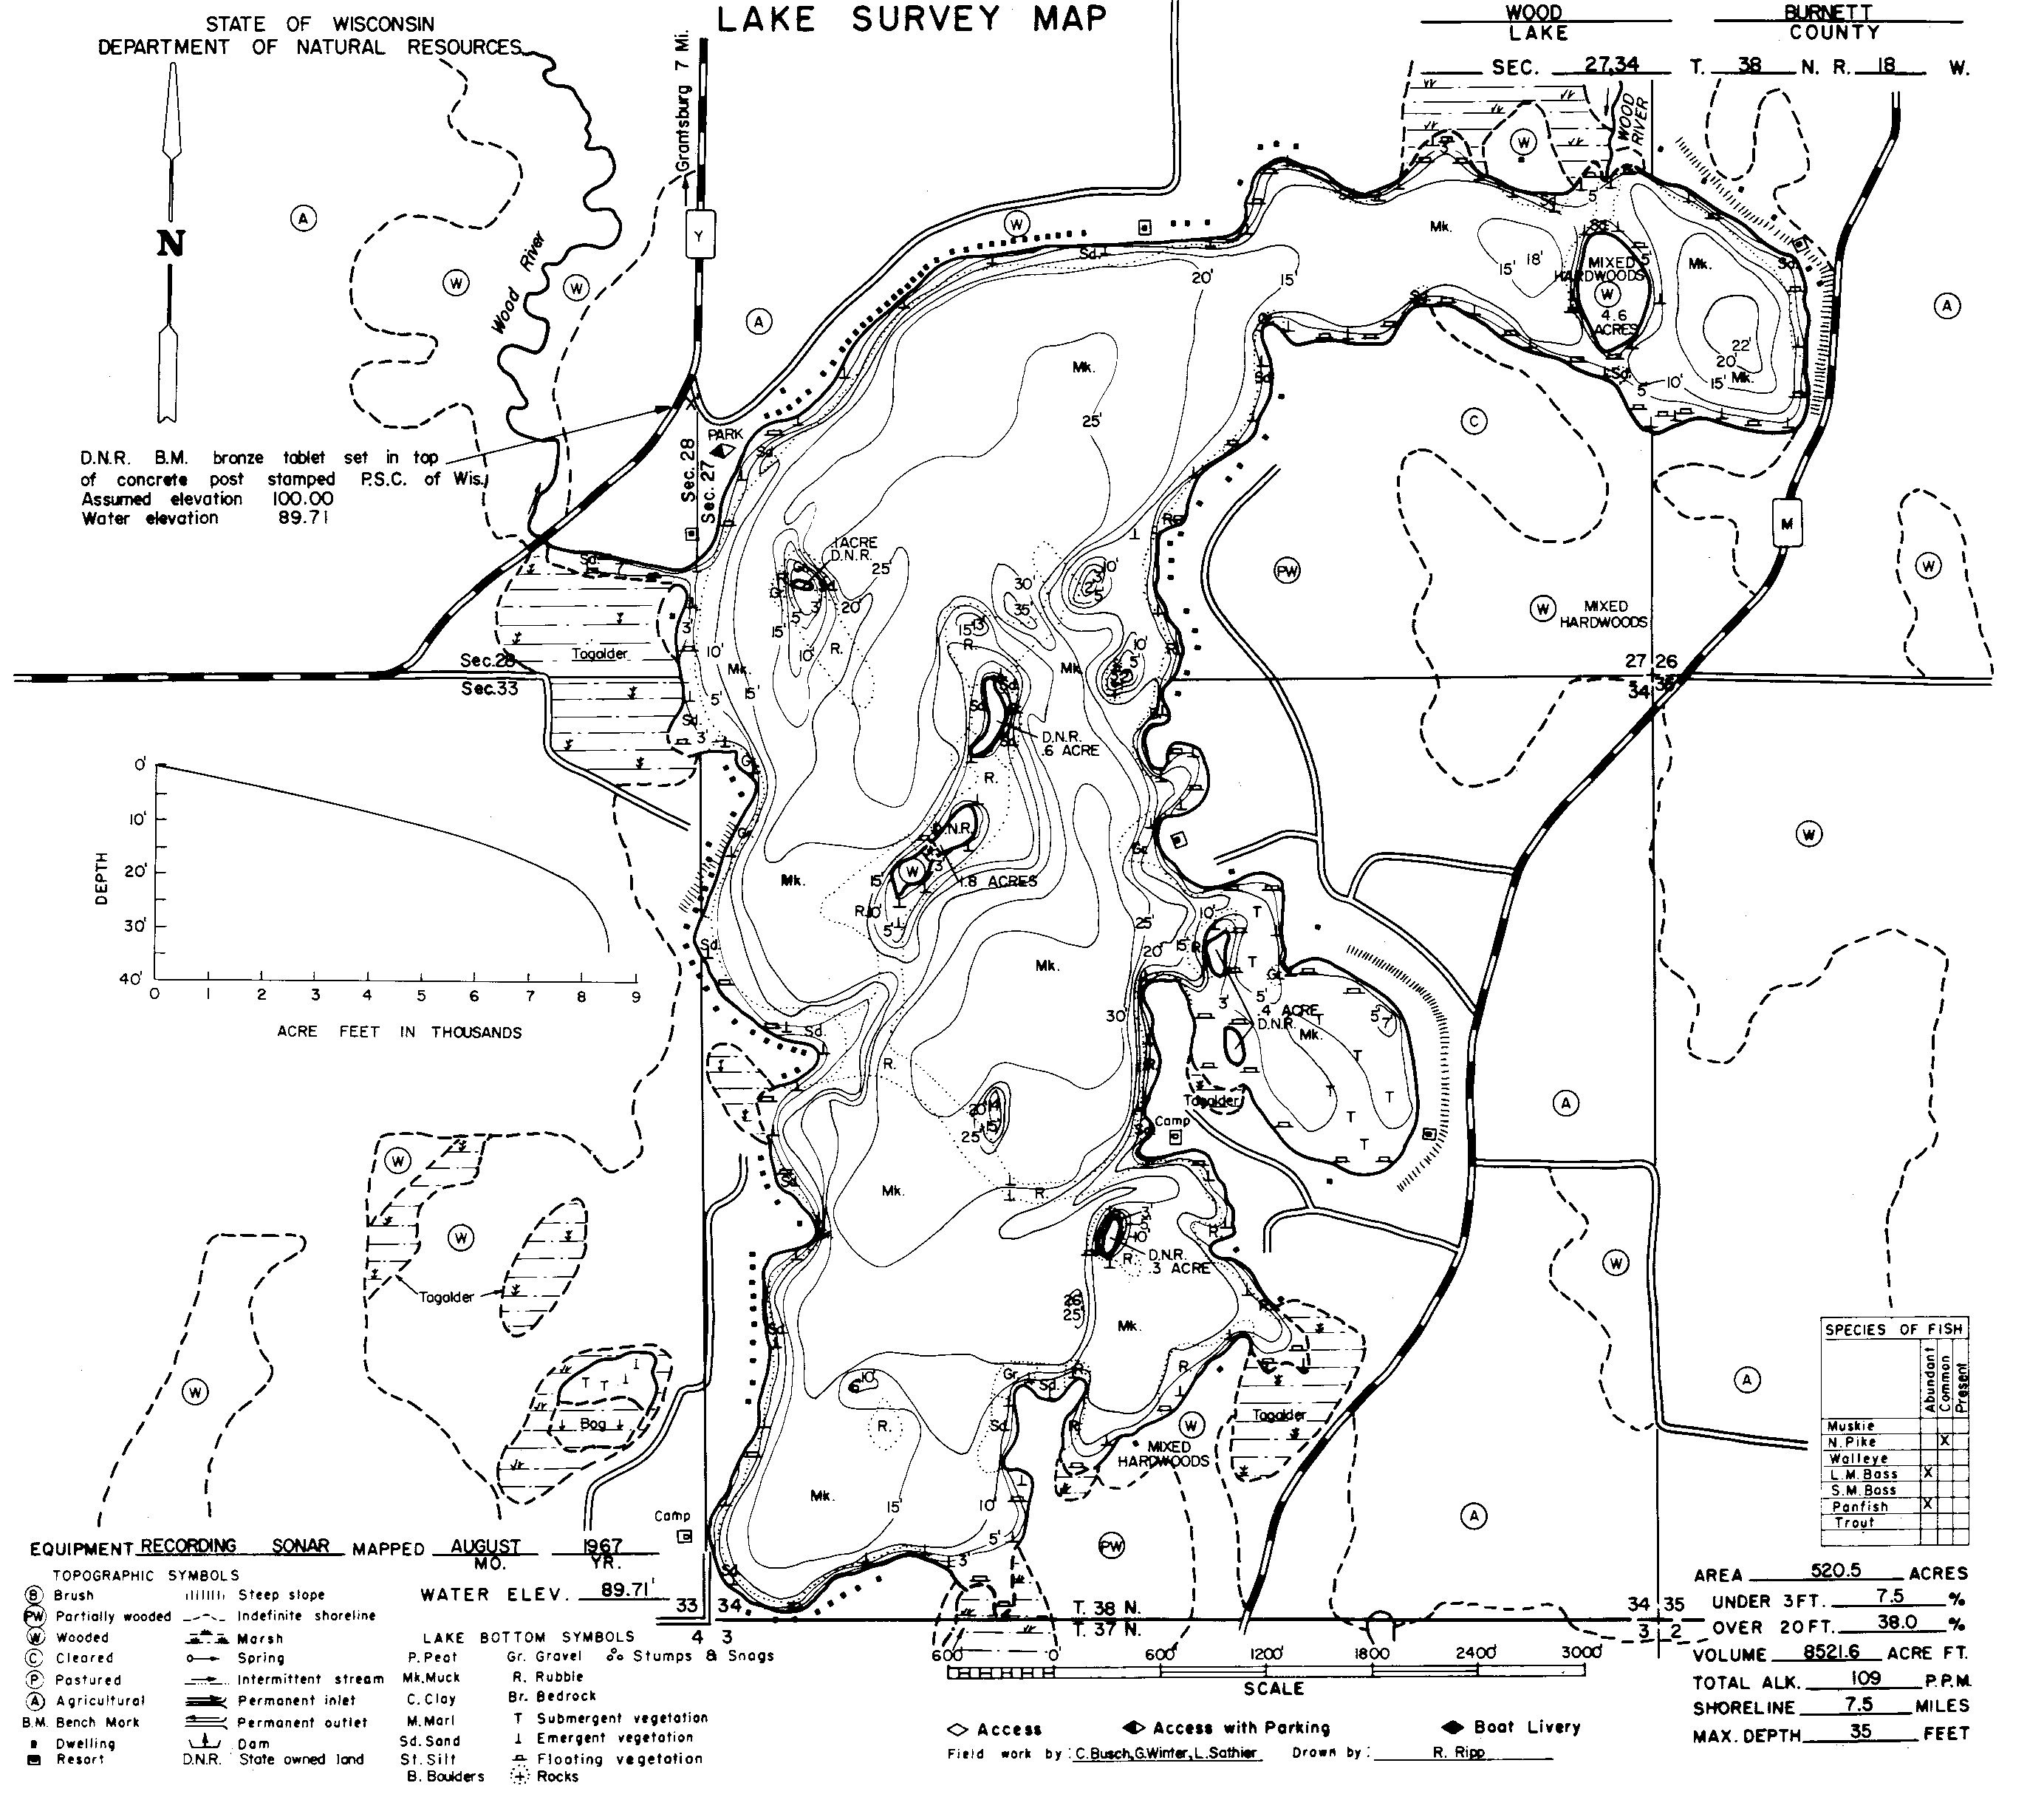 Wood Map 1